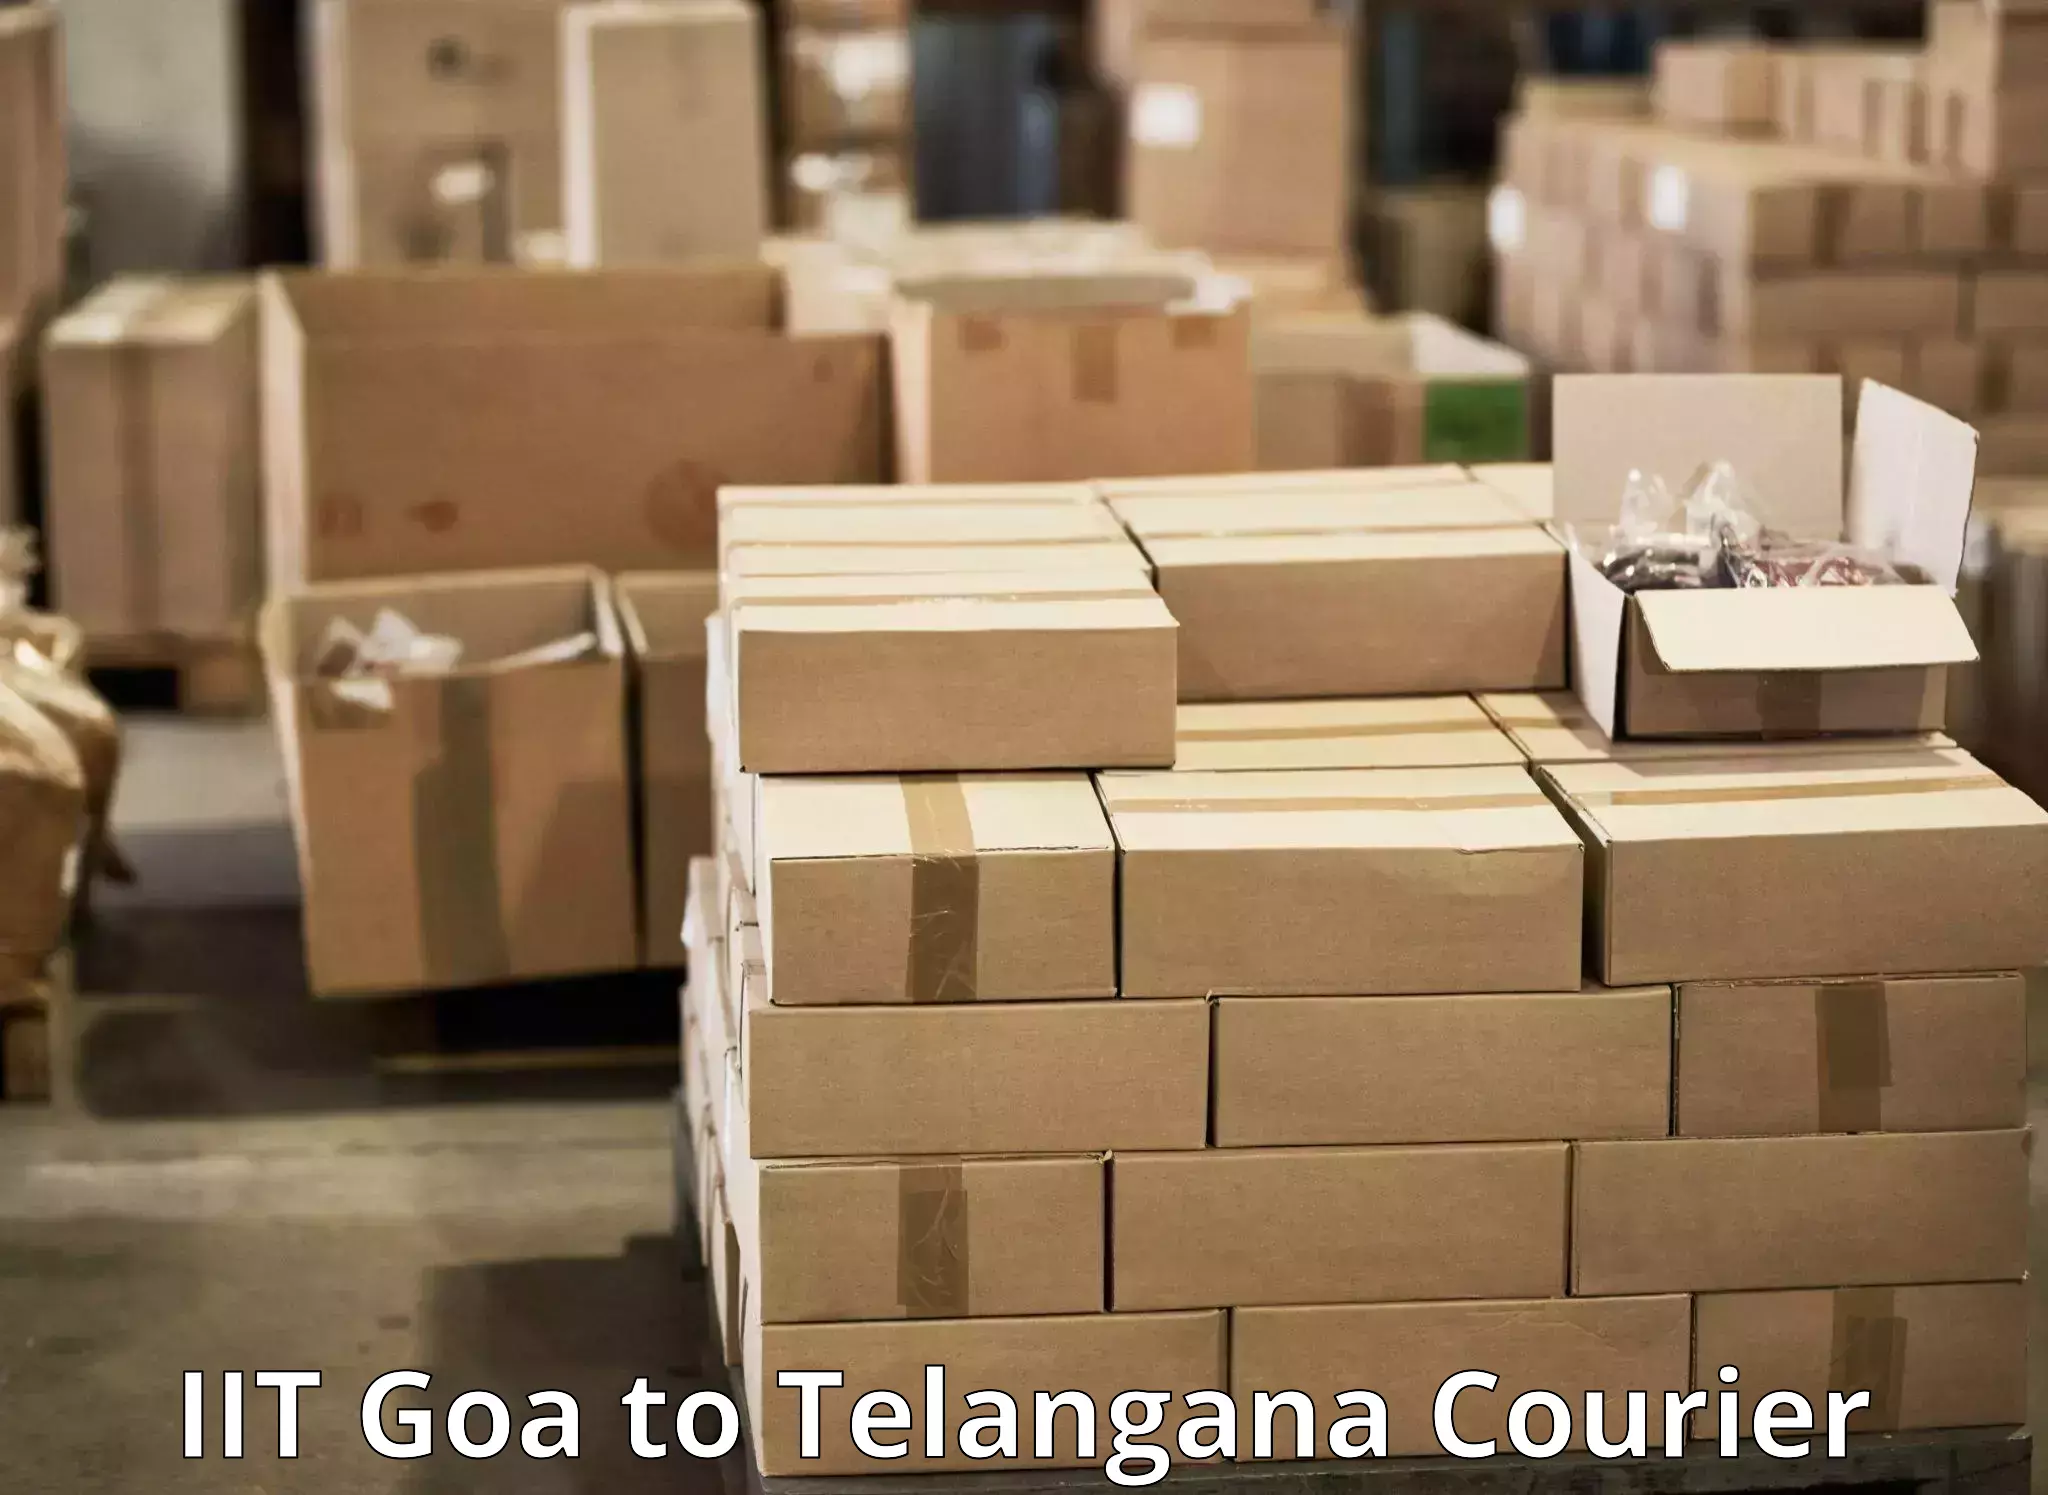 Versatile courier options IIT Goa to Bejjanki